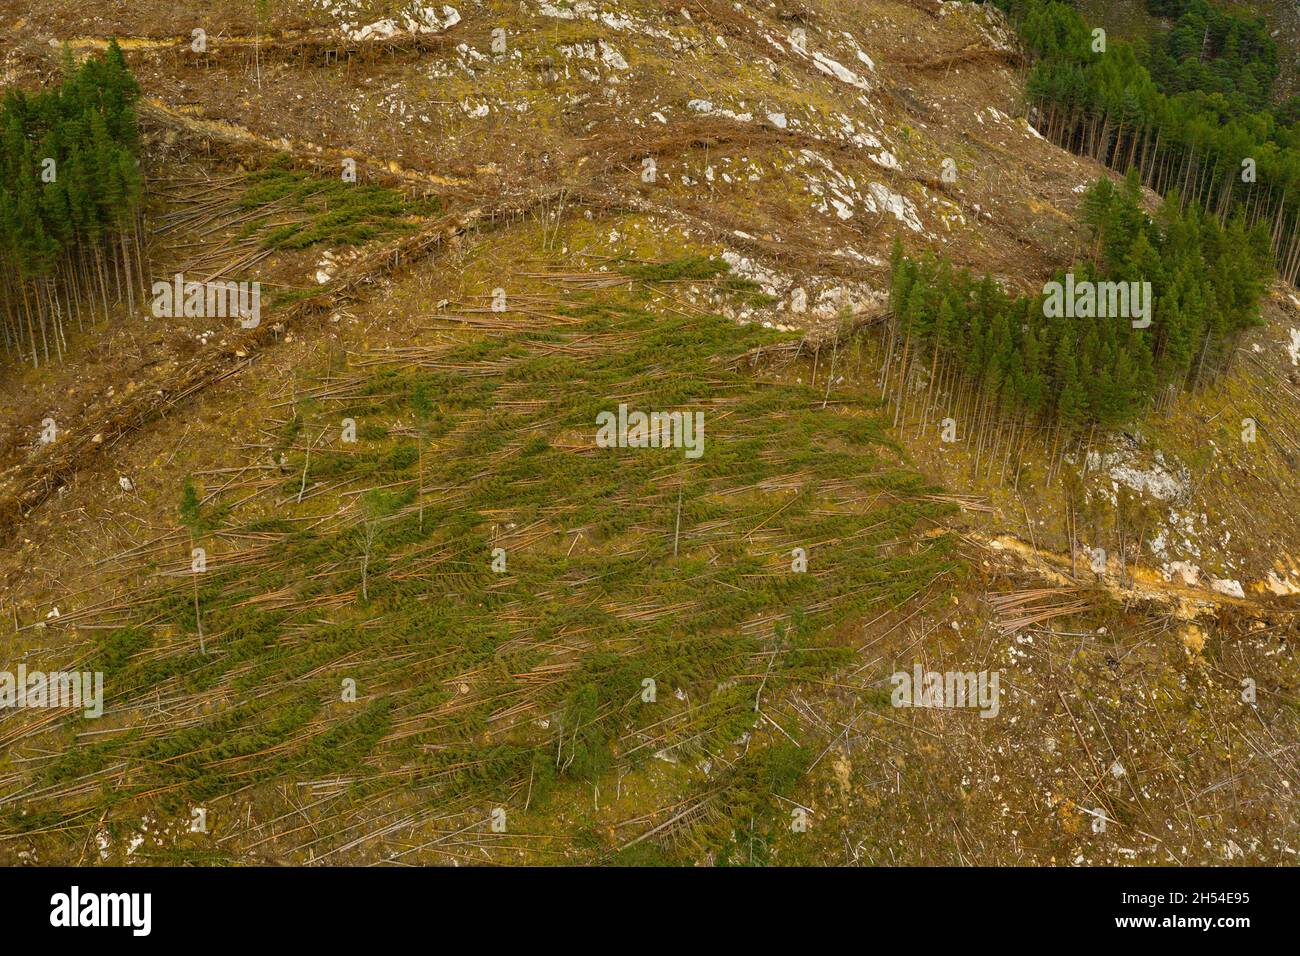 Vista aérea de la cosecha de madera en una ladera cerca de Cannich en las Tierras Altas de Escocia. Foto de stock